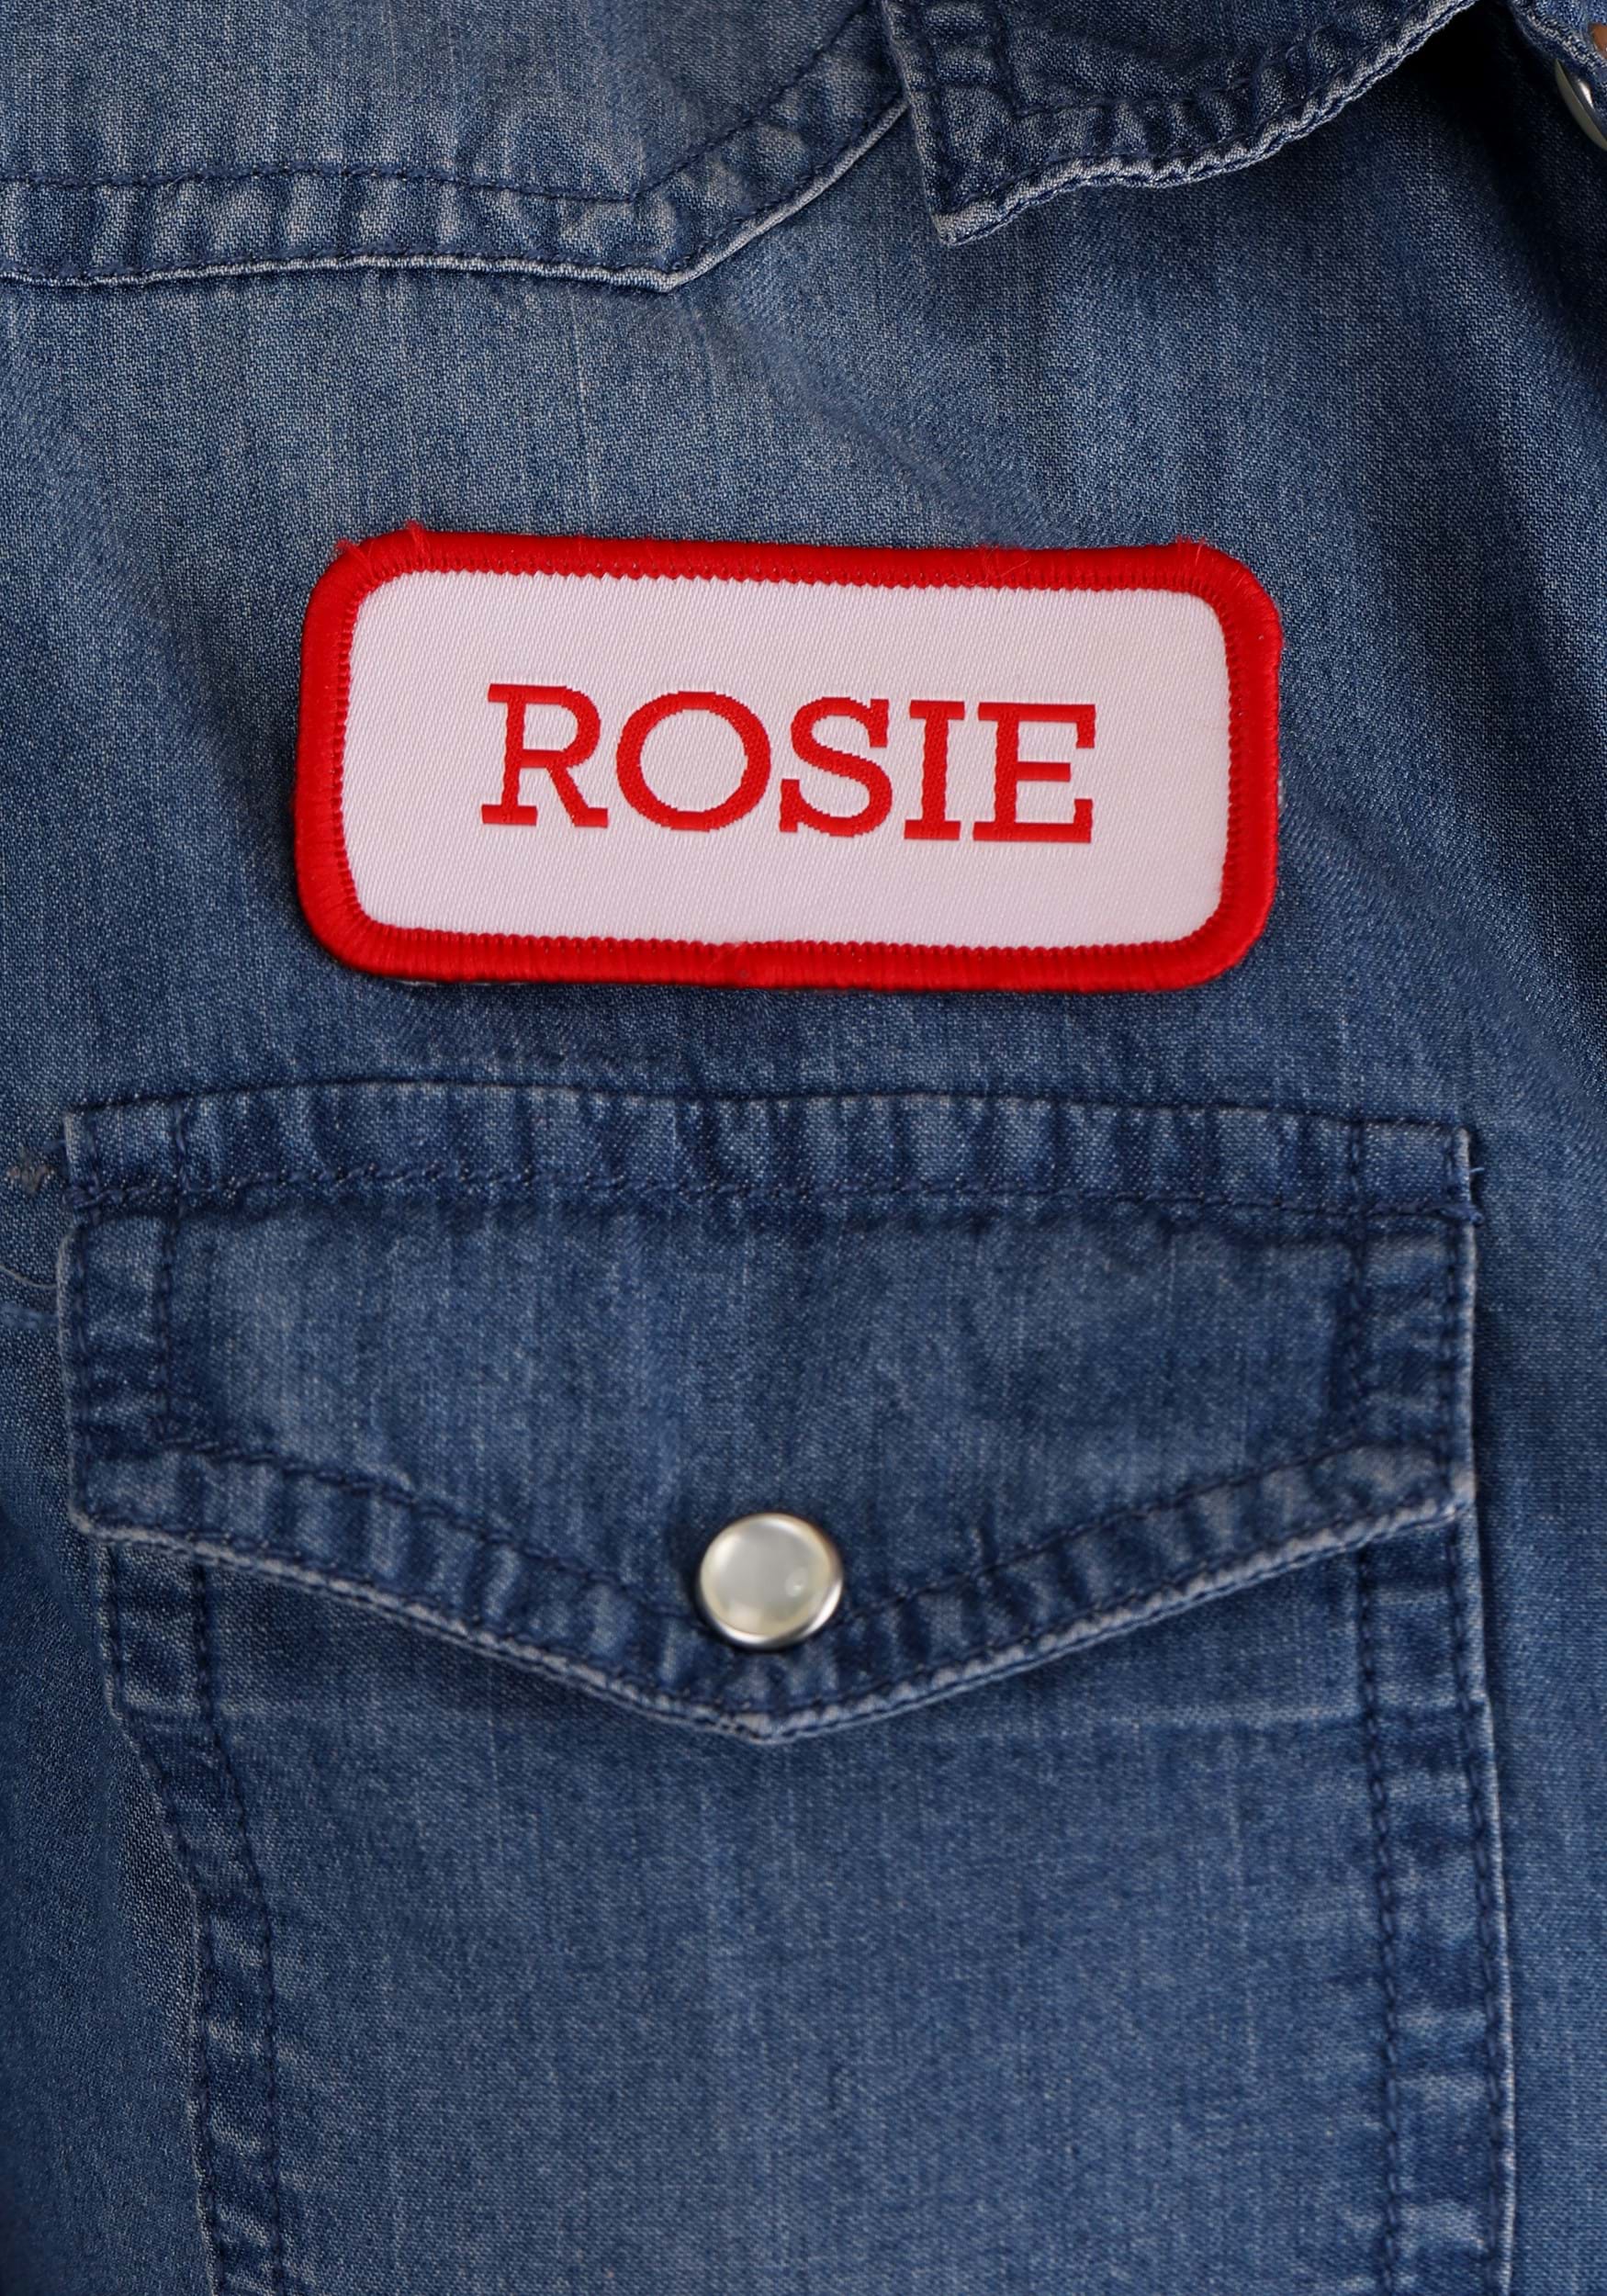 Costume Rosie The Riveter Kit